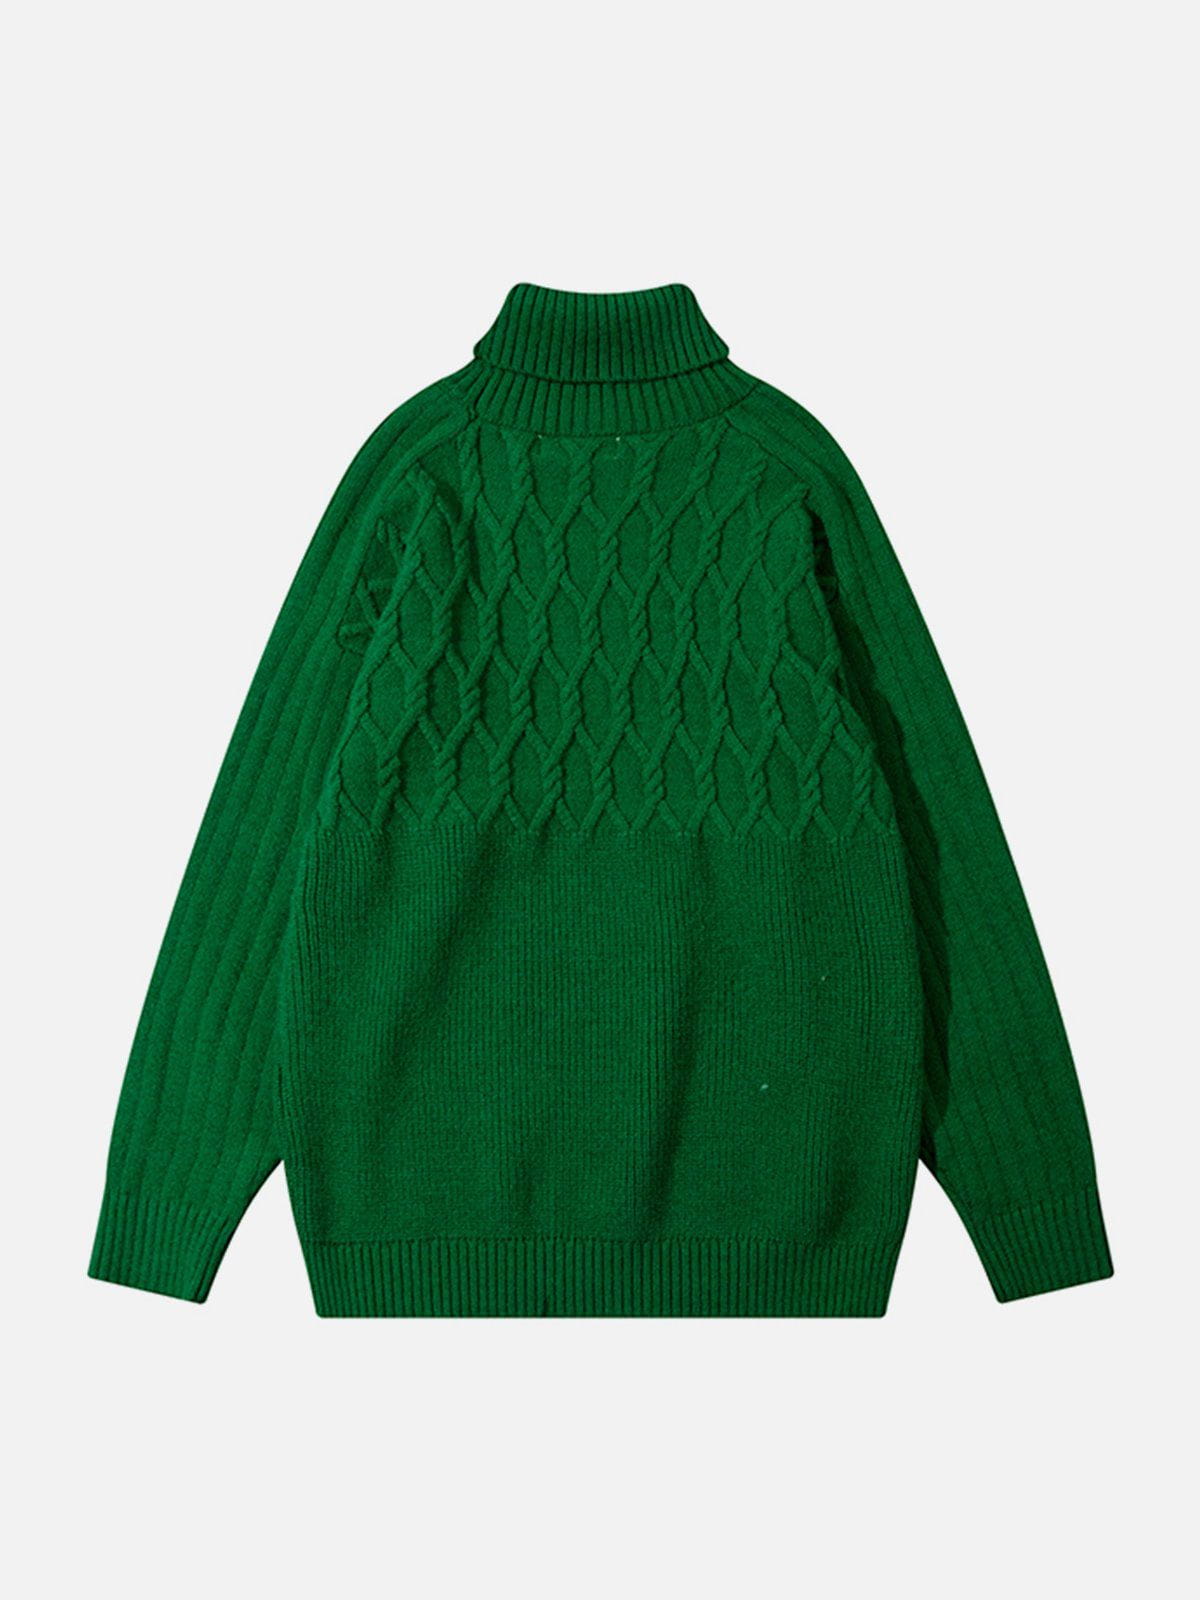 Eprezzy® - Plain Braided Turtleneck Sweater Streetwear Fashion - eprezzy.com